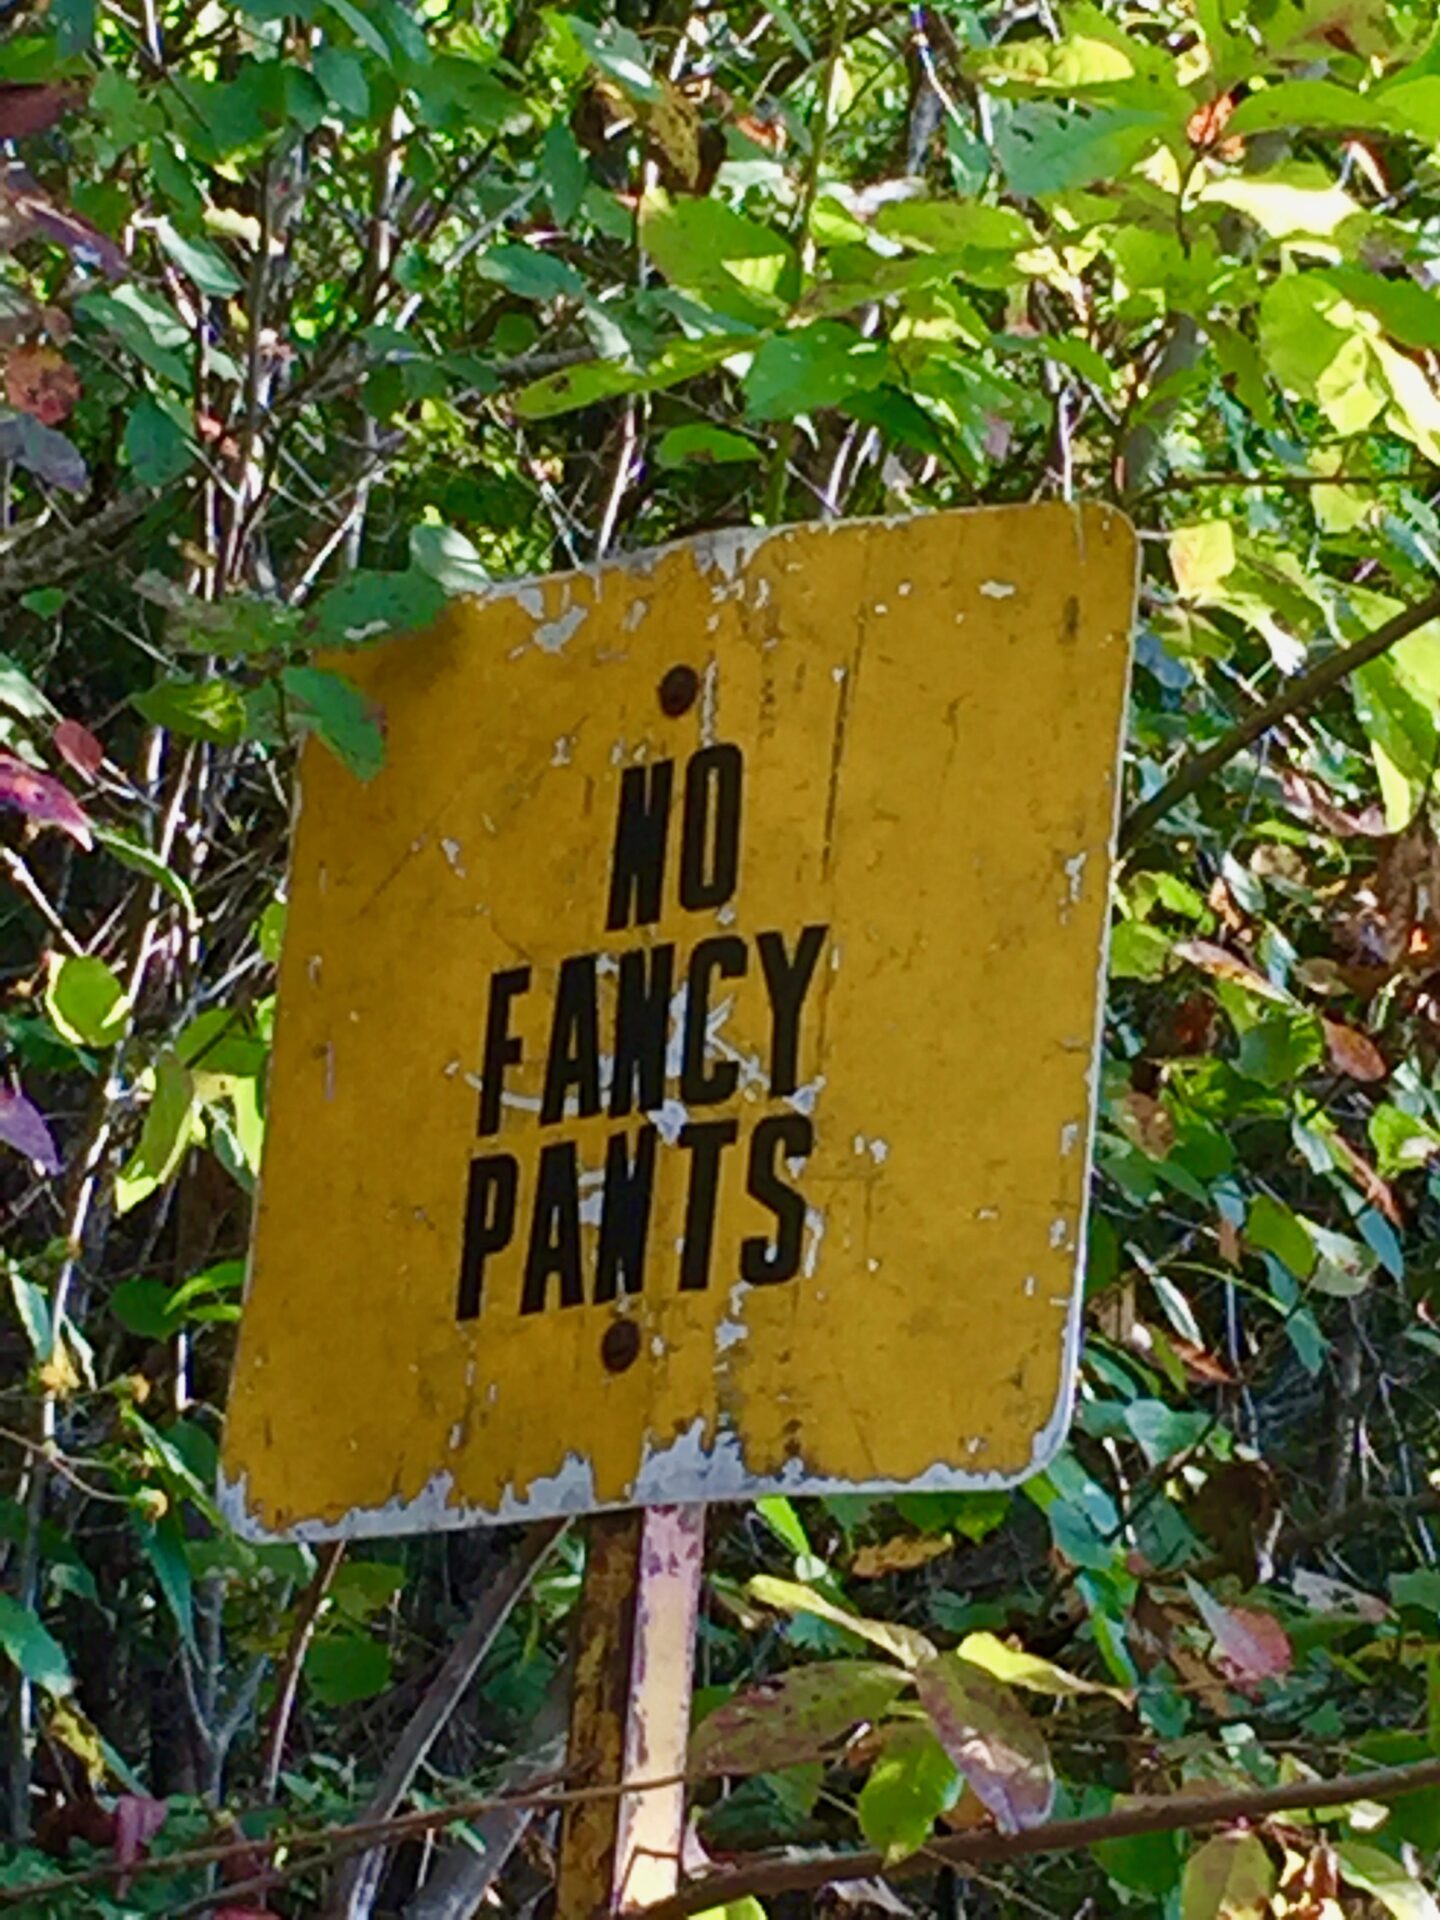 no fancy pants sign